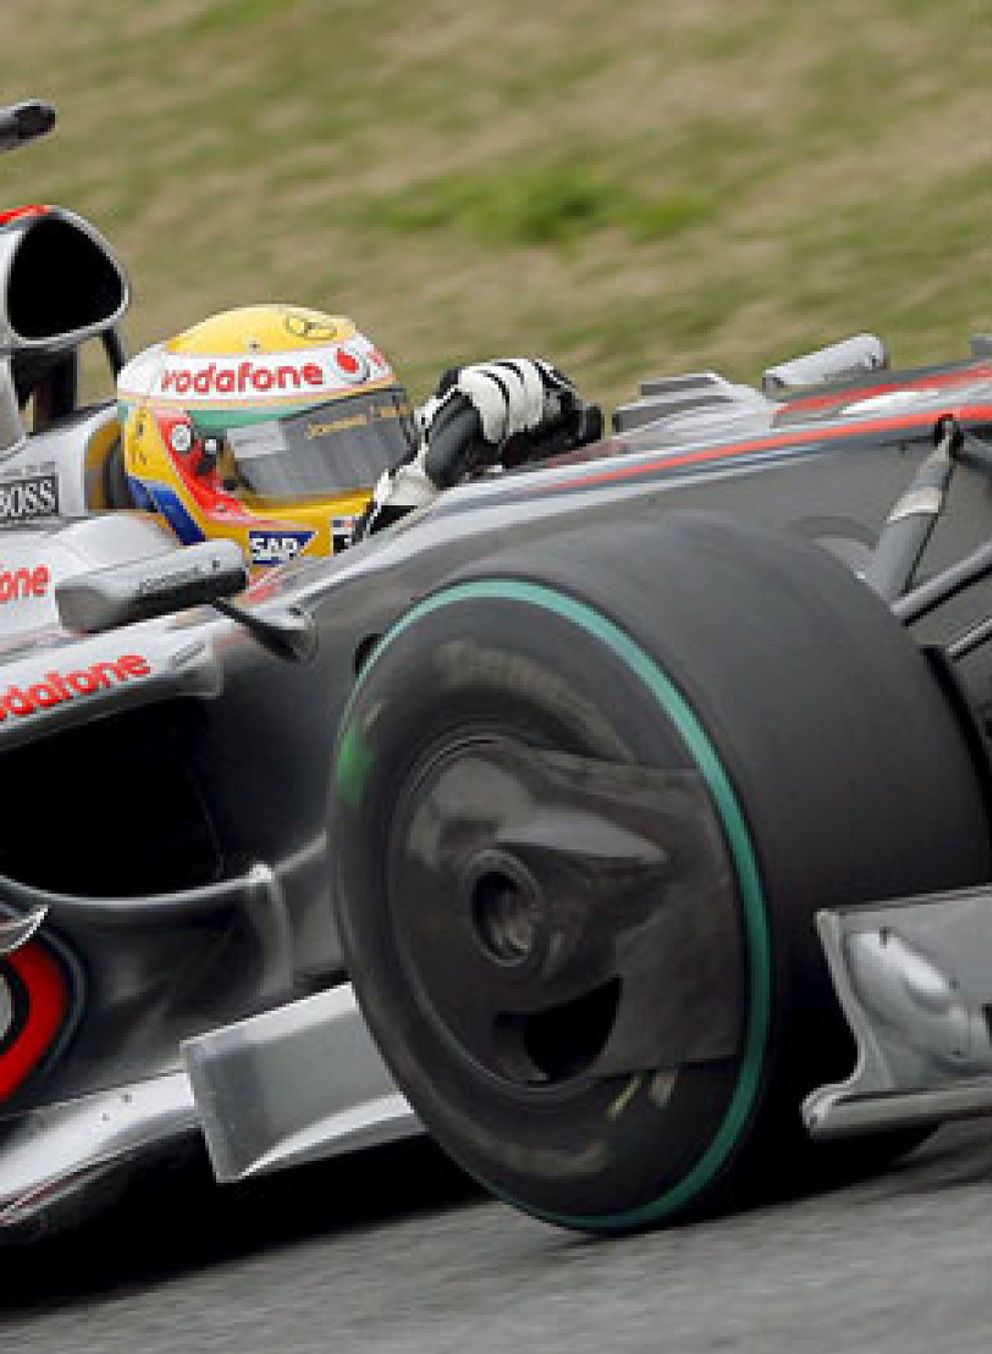 Foto: Button, de BrawnGP, domina mientras Hamilton vuelve a sufrir un accidente